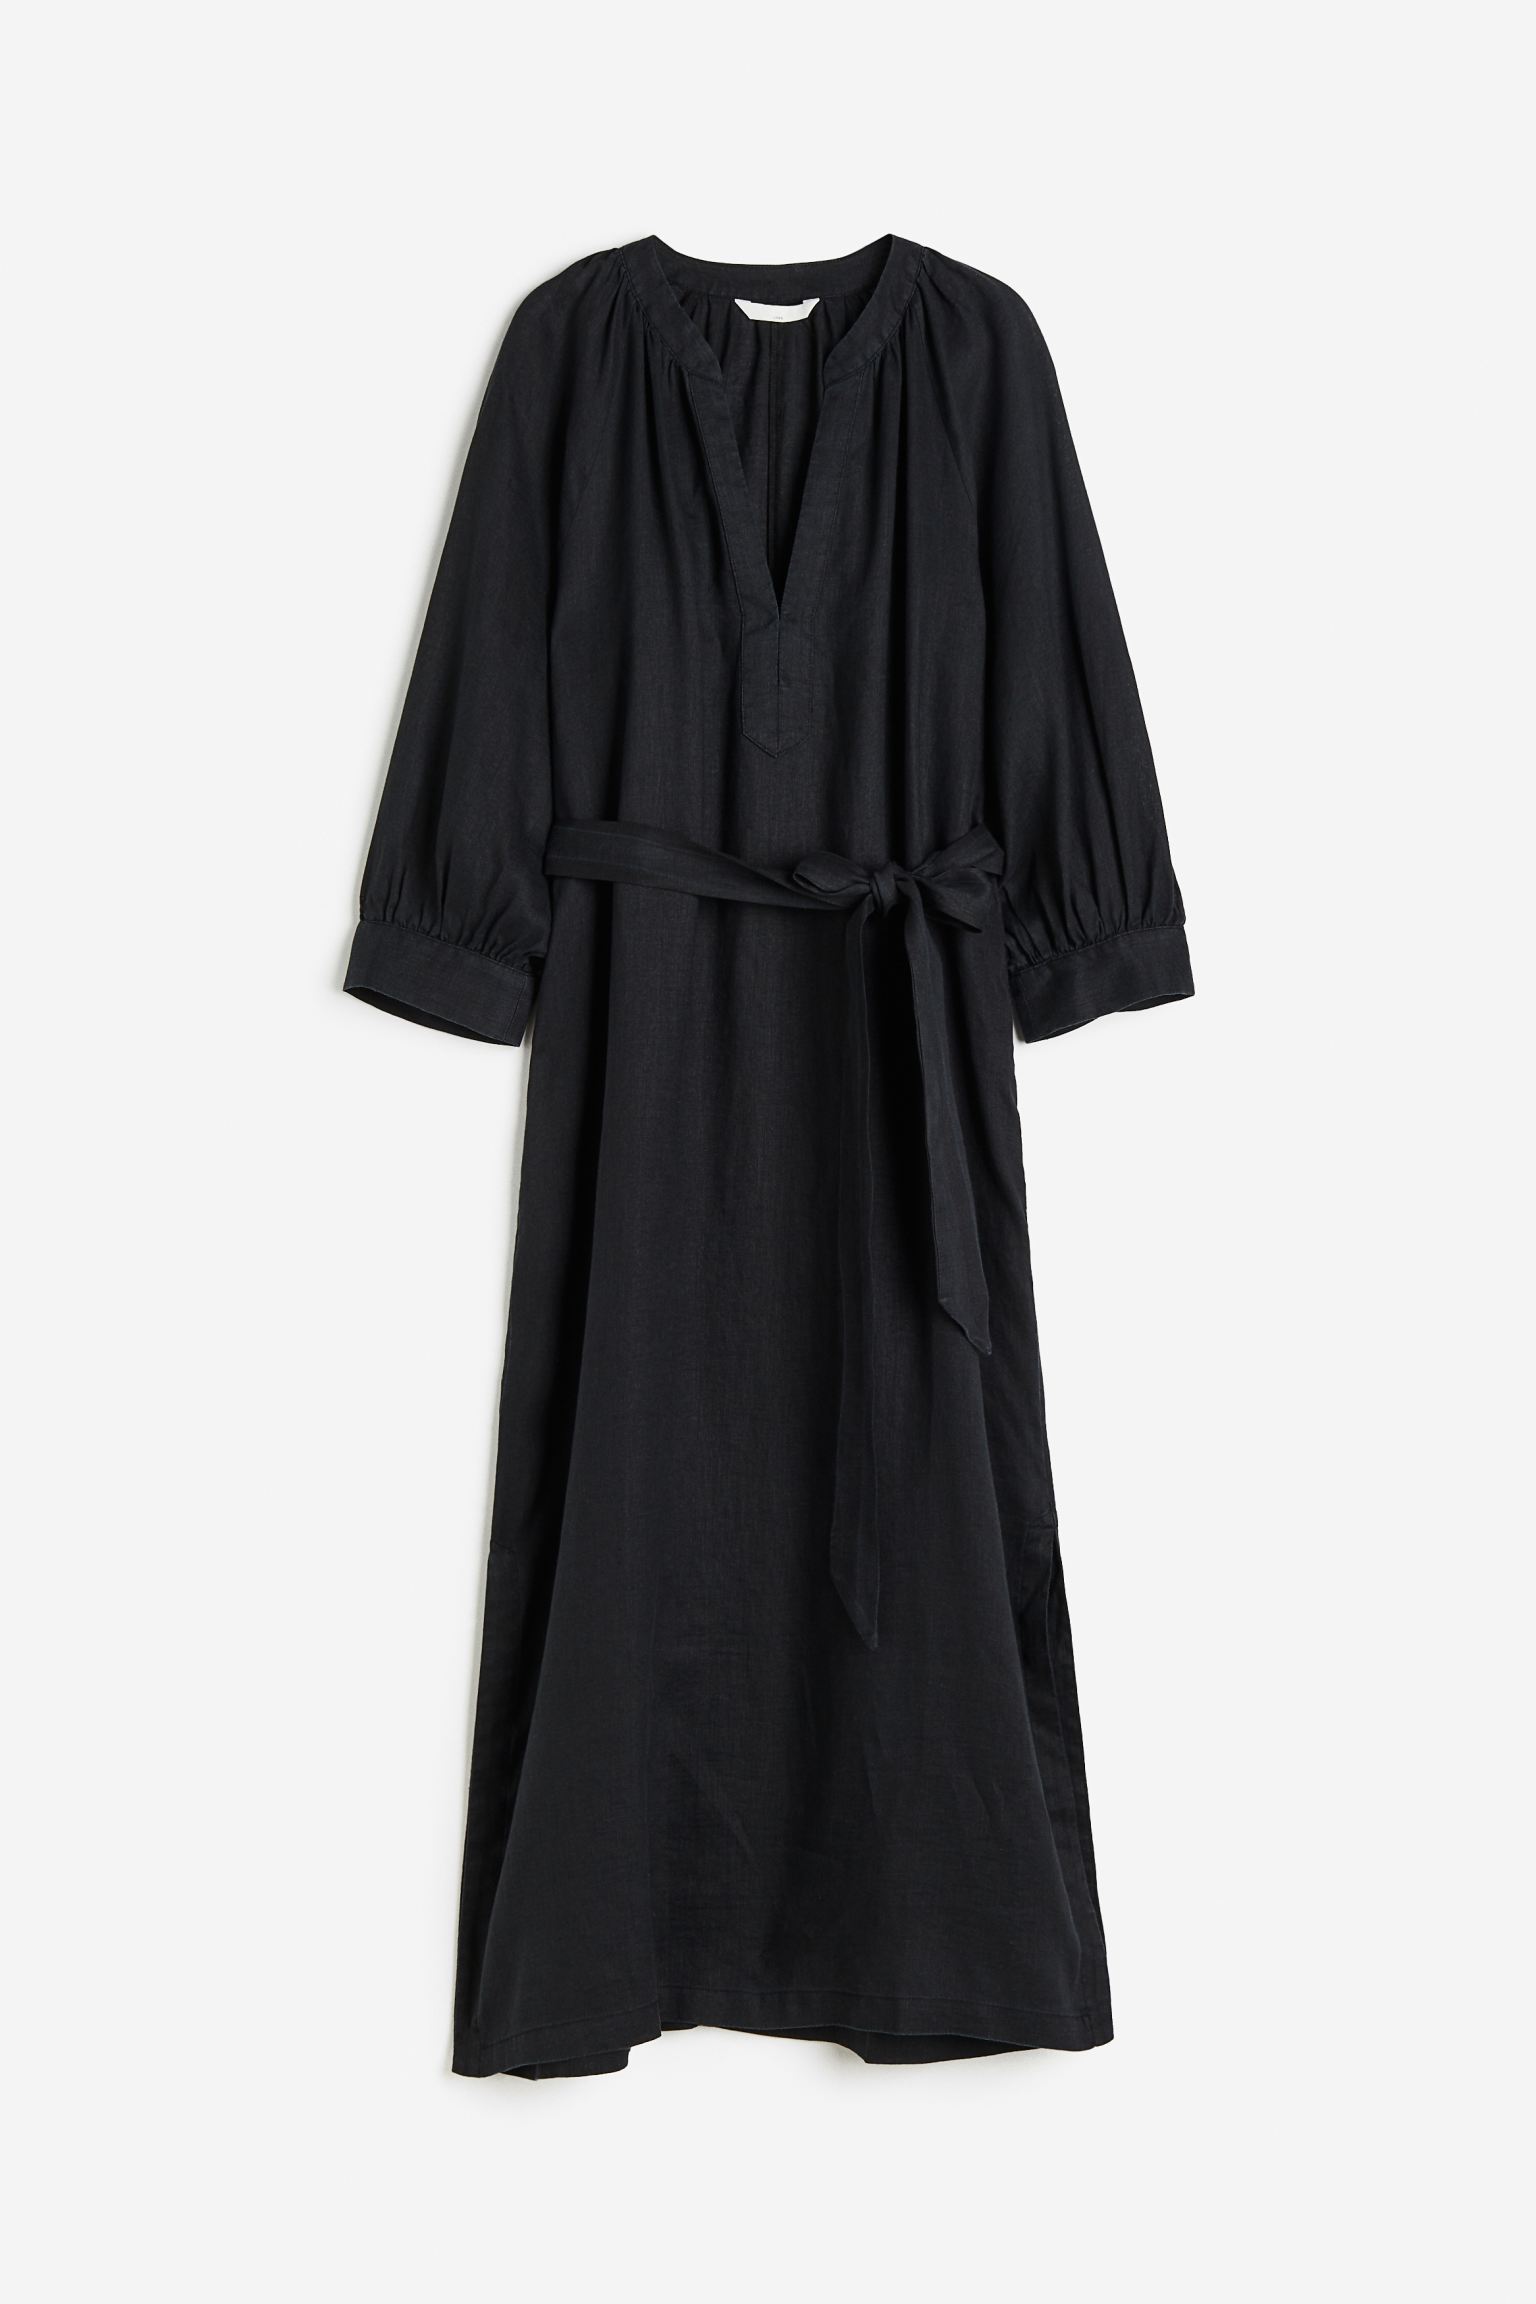 Платье женское H&M 1153138004 черное L (доставка из-за рубежа)